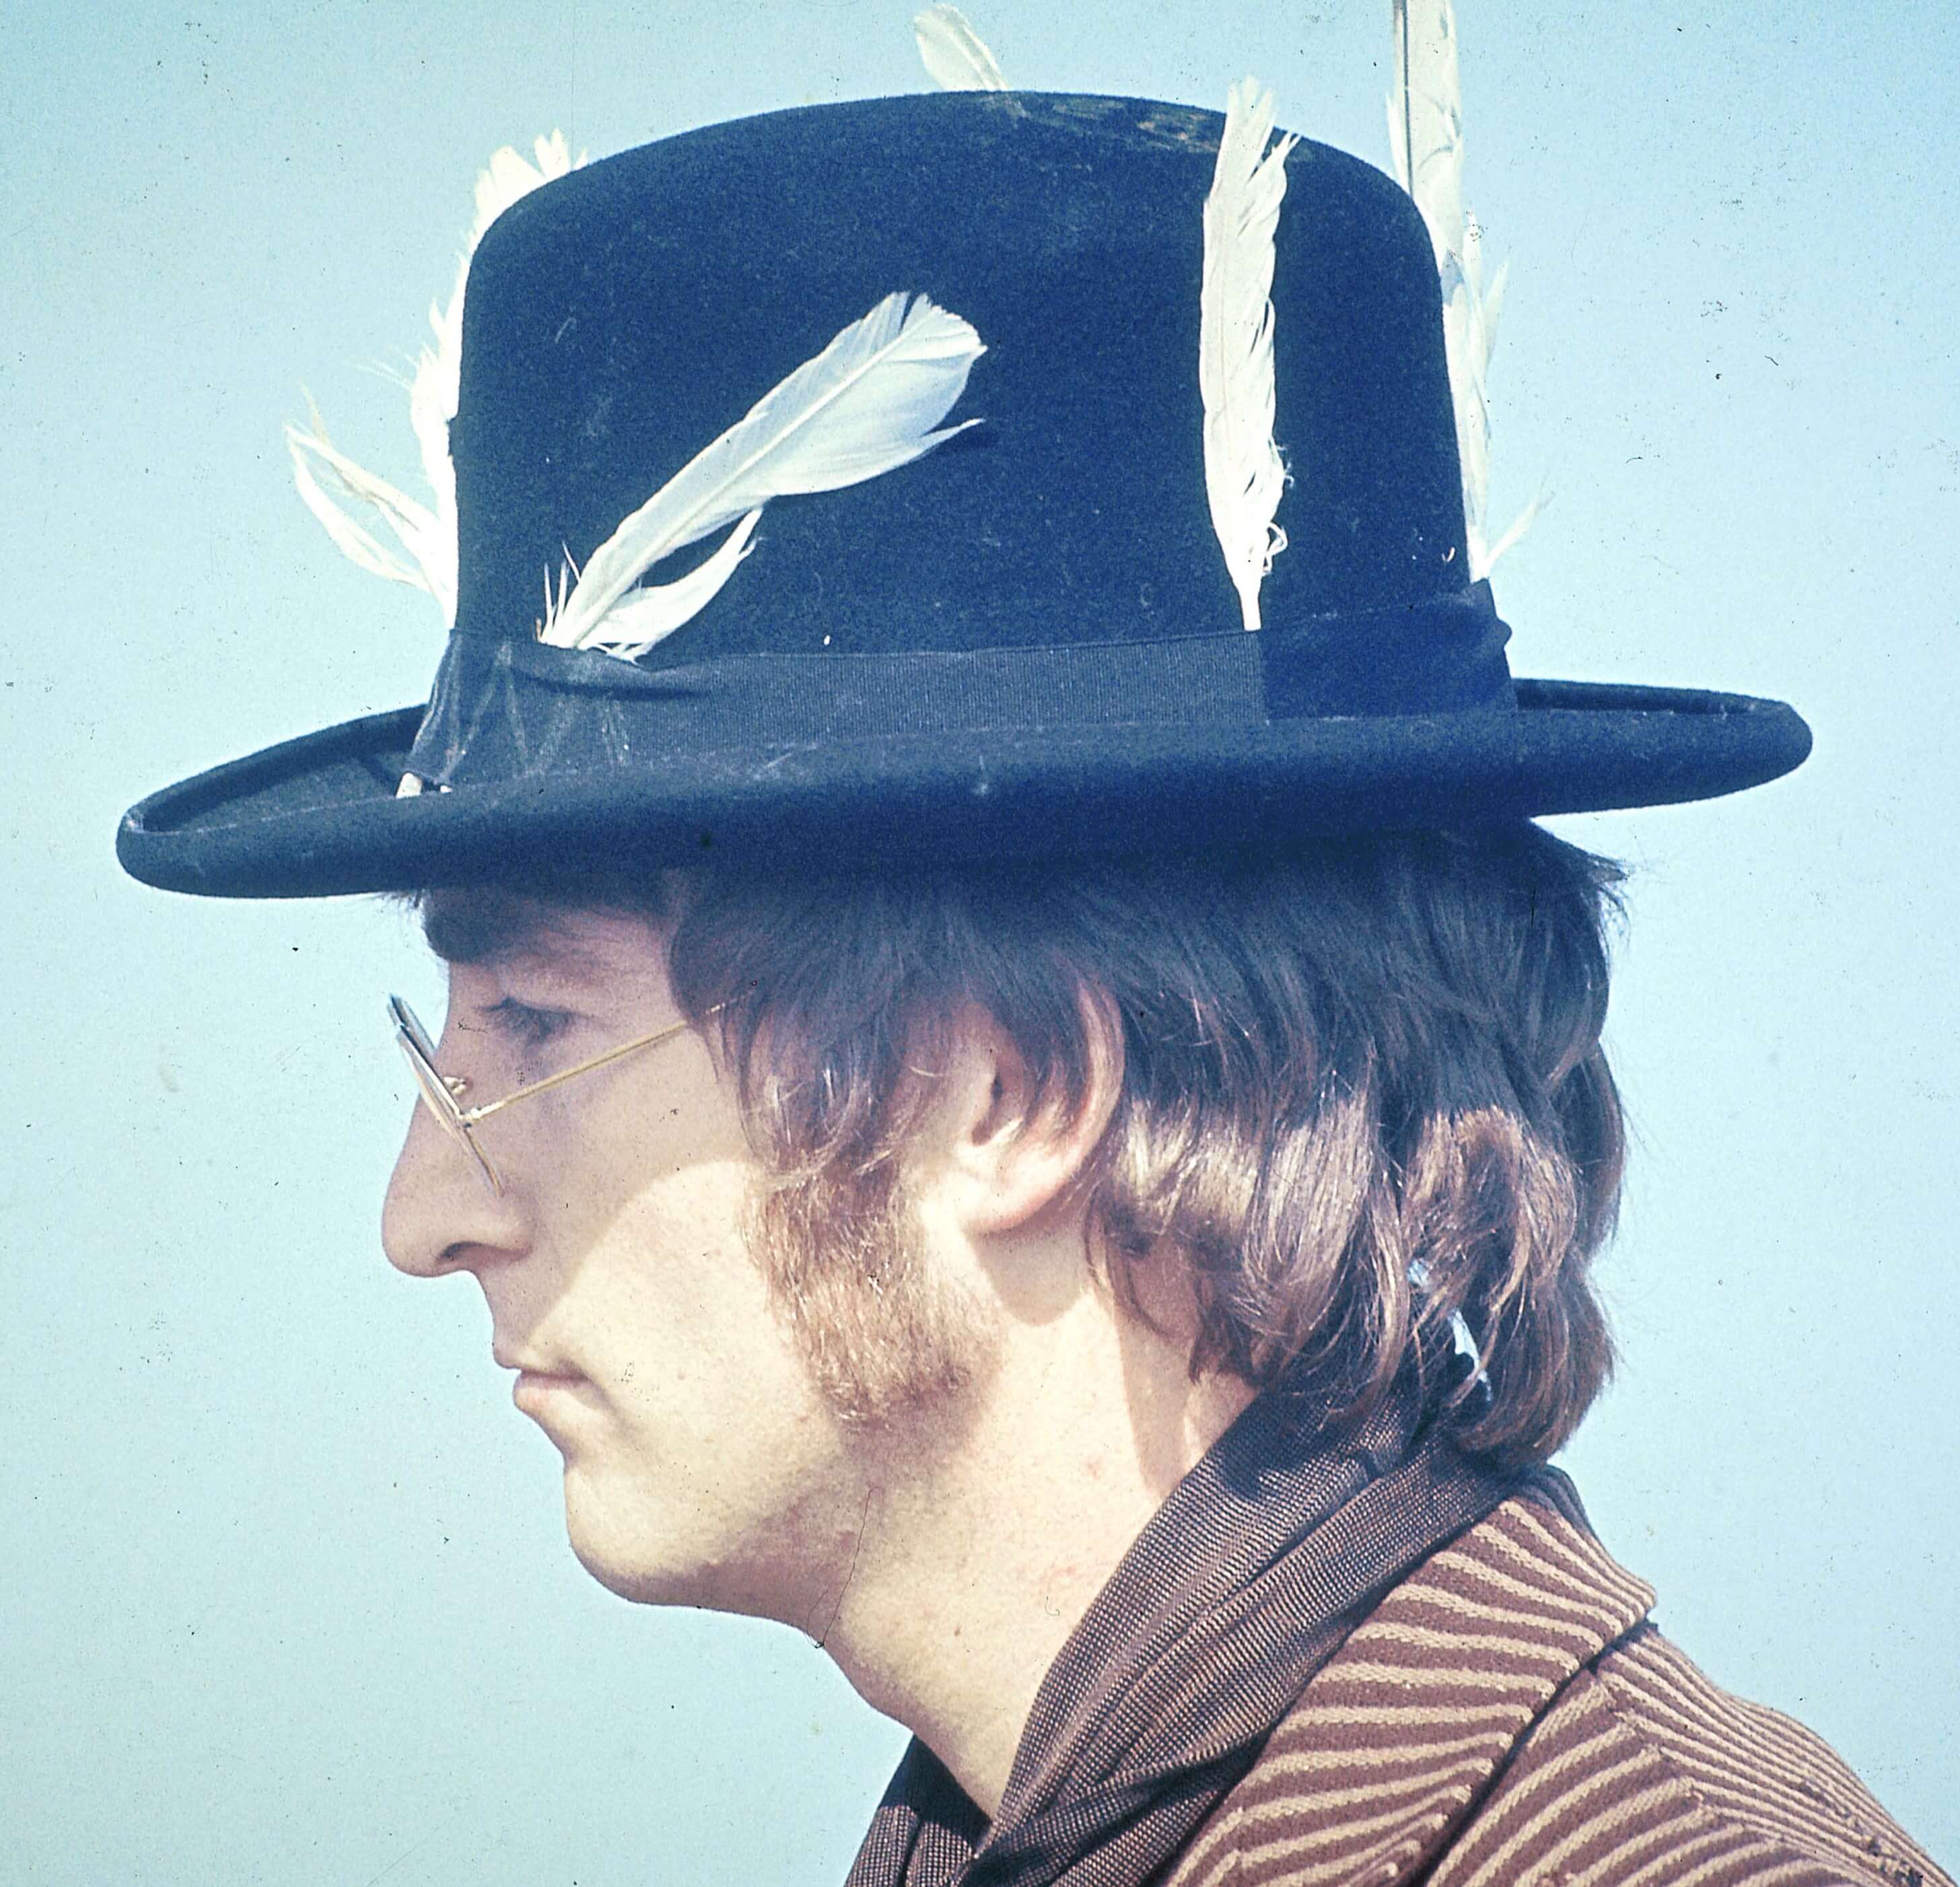 John Lennon in a hat